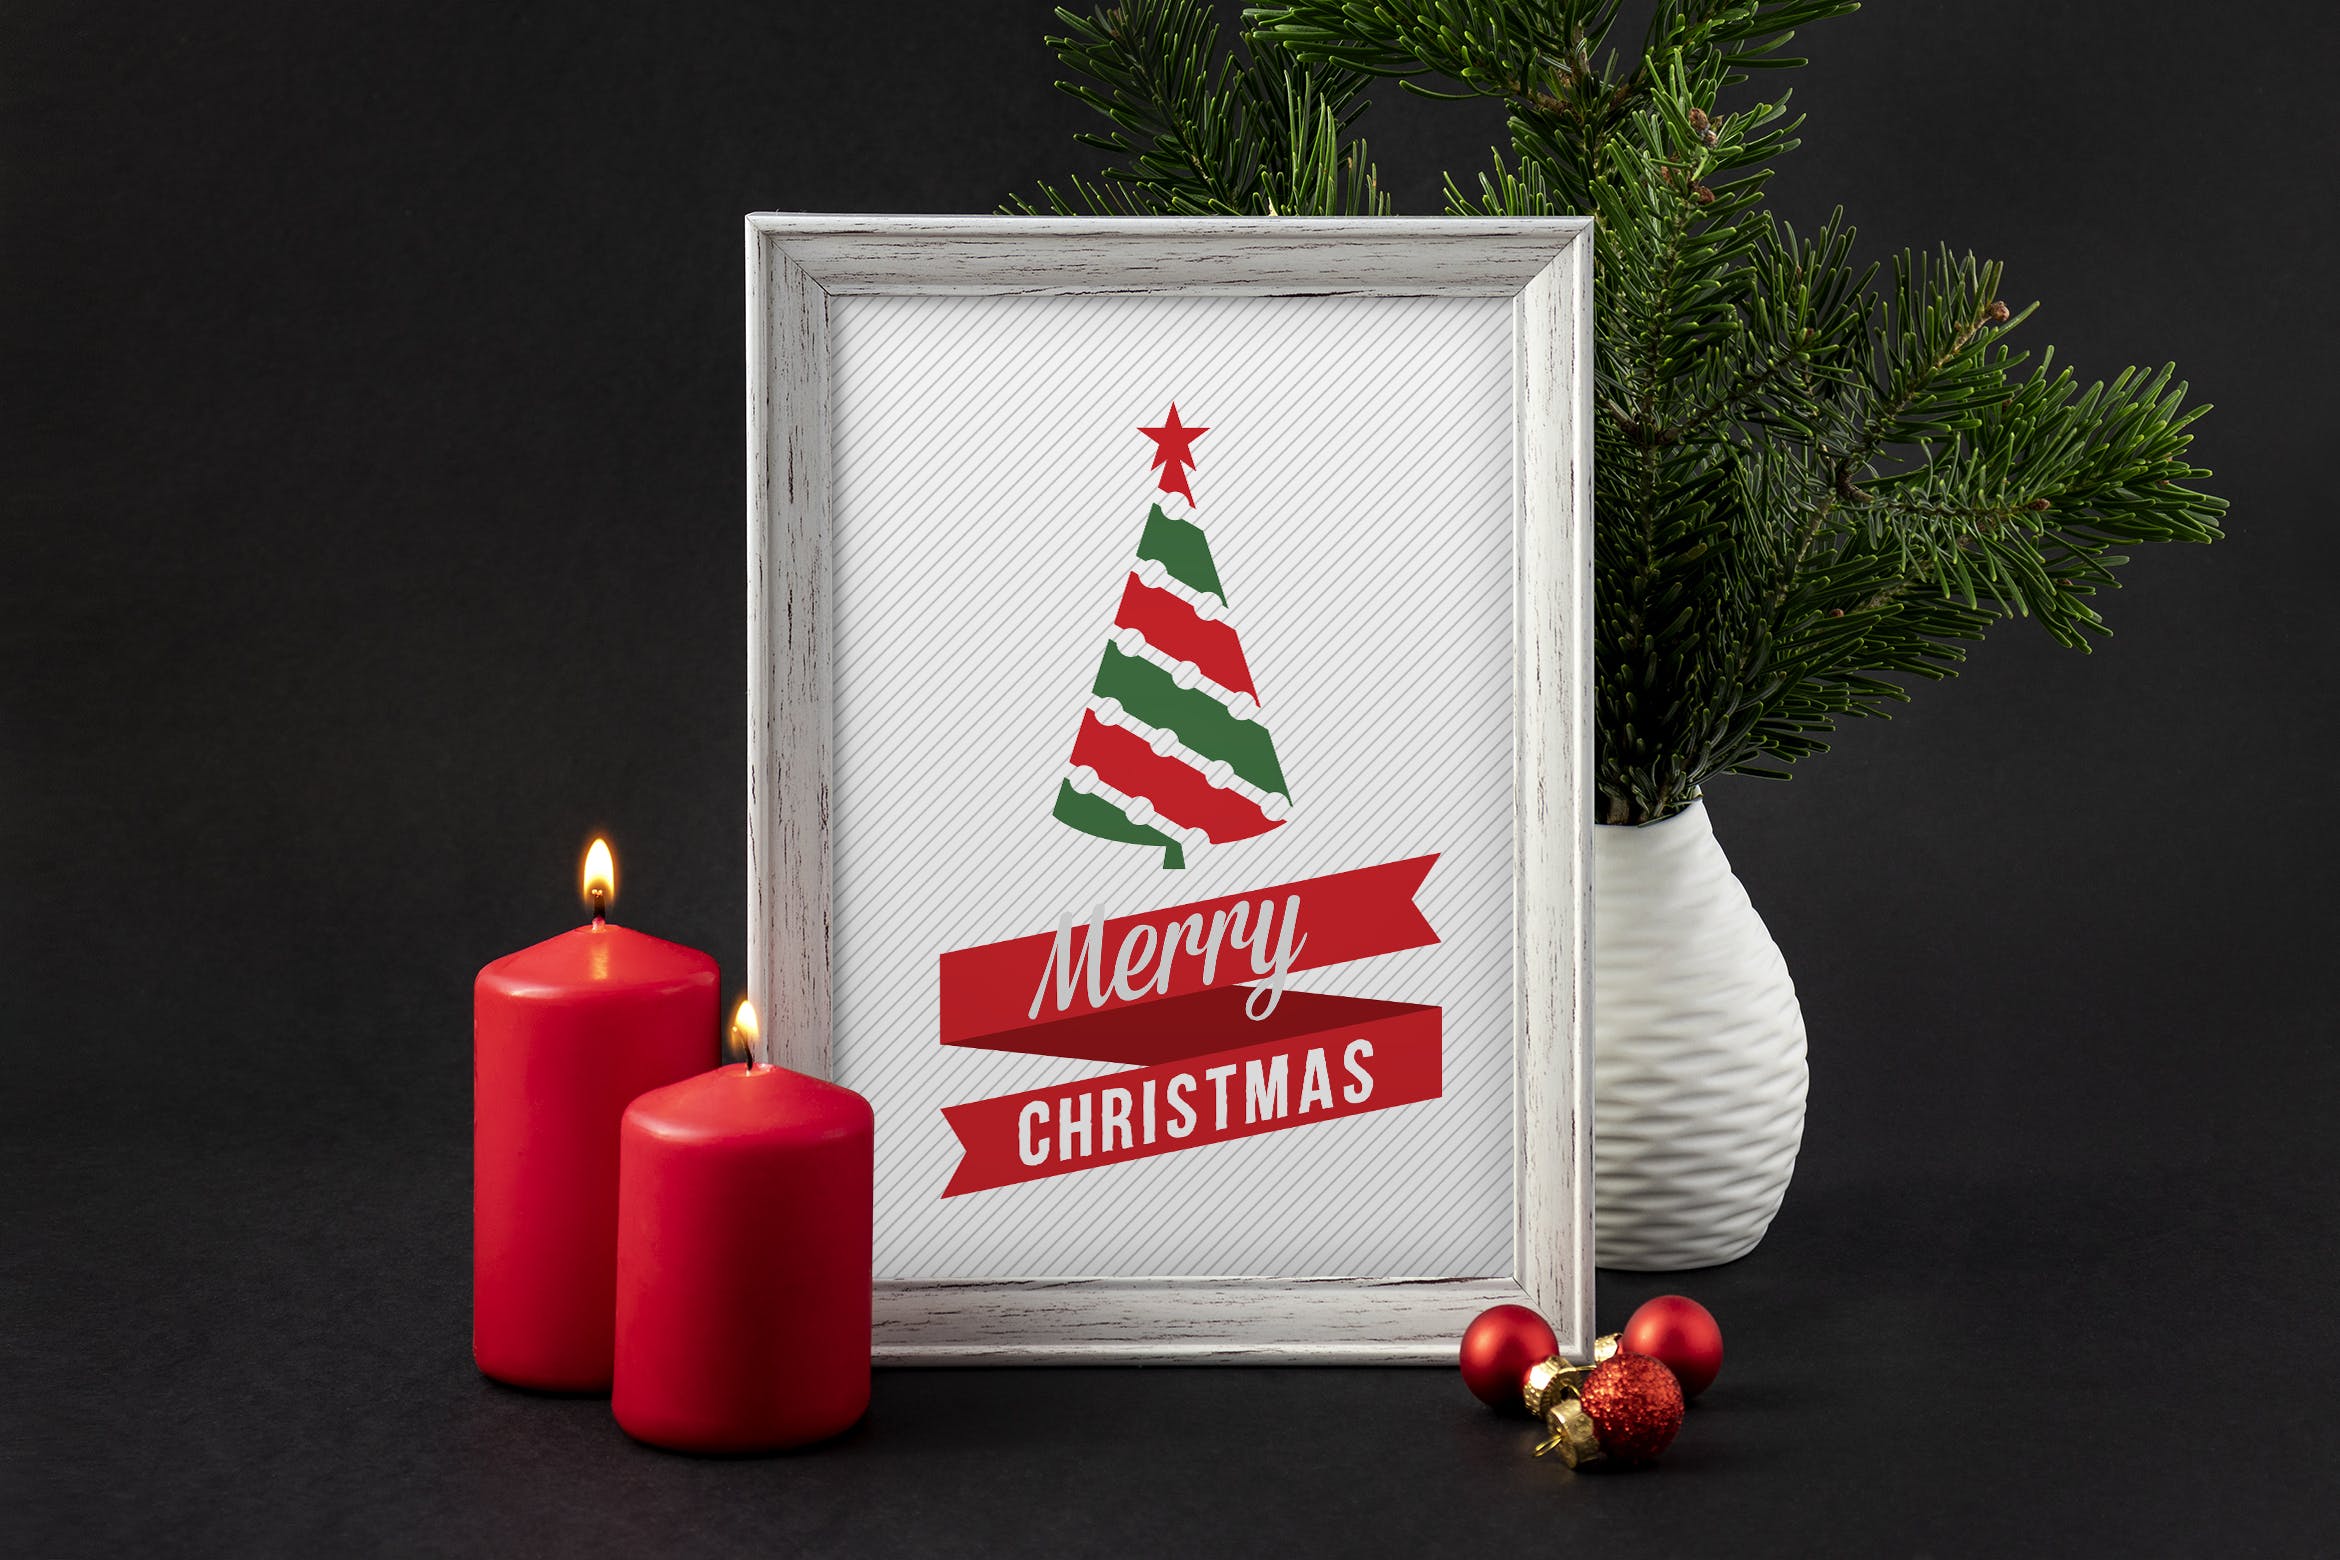 圣诞节主题背景照片相框样机模板 Christmas picture frame mockup插图